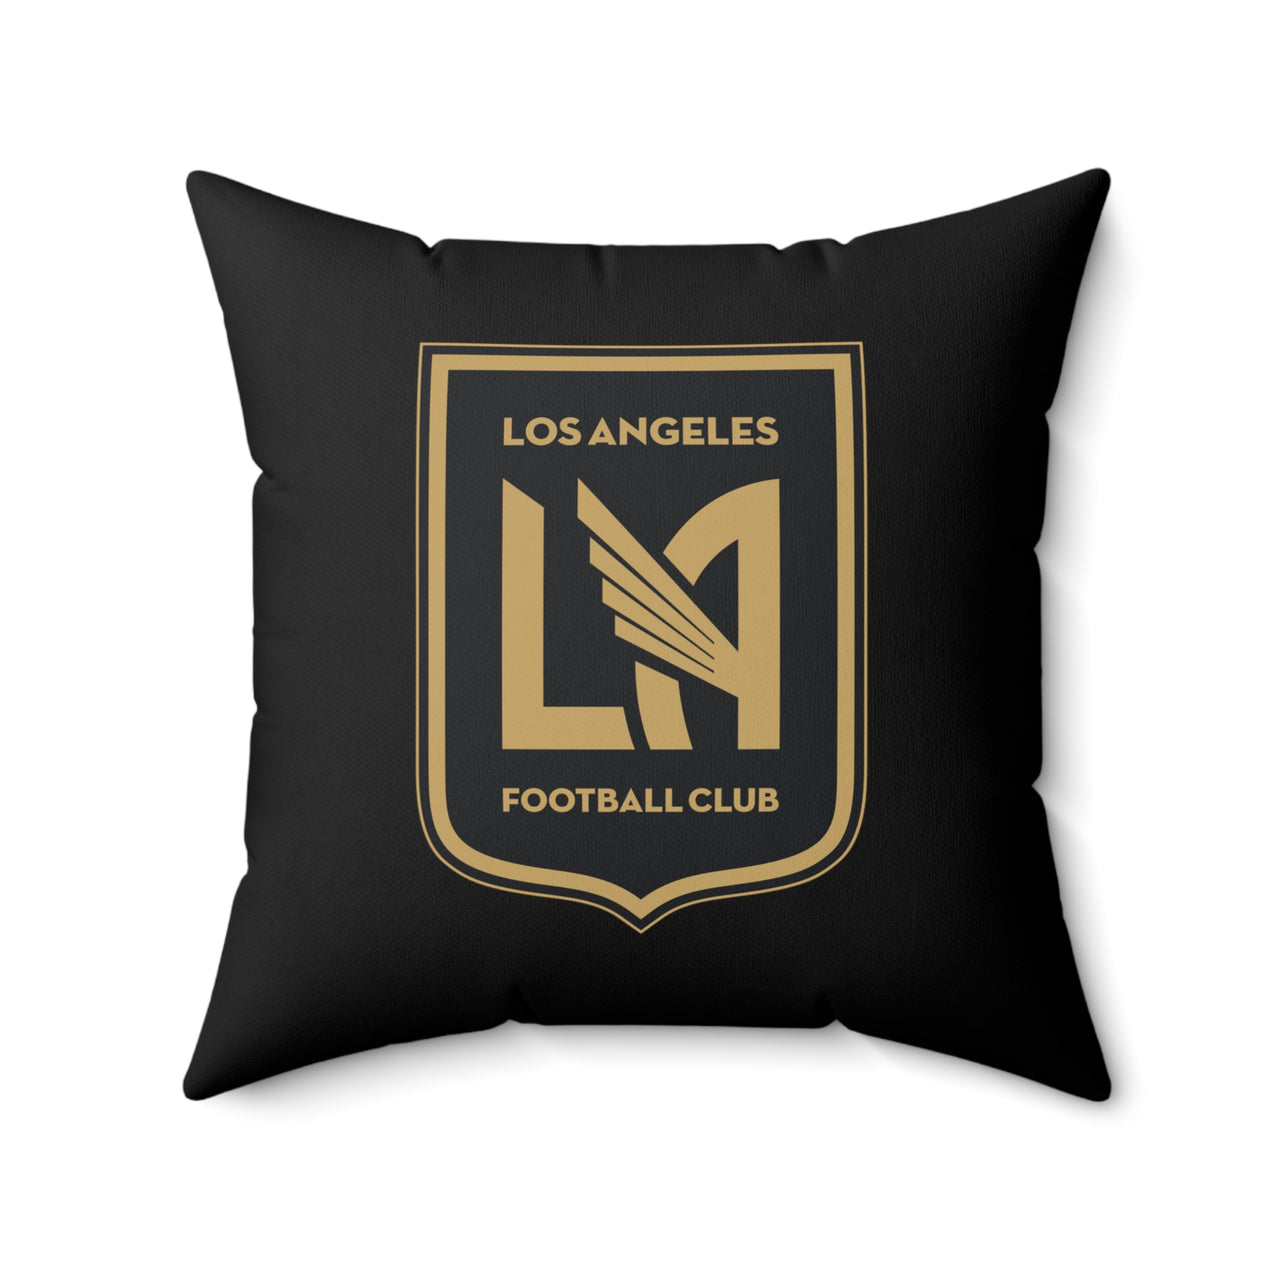 LAFC Spun Polyester Square Pillow